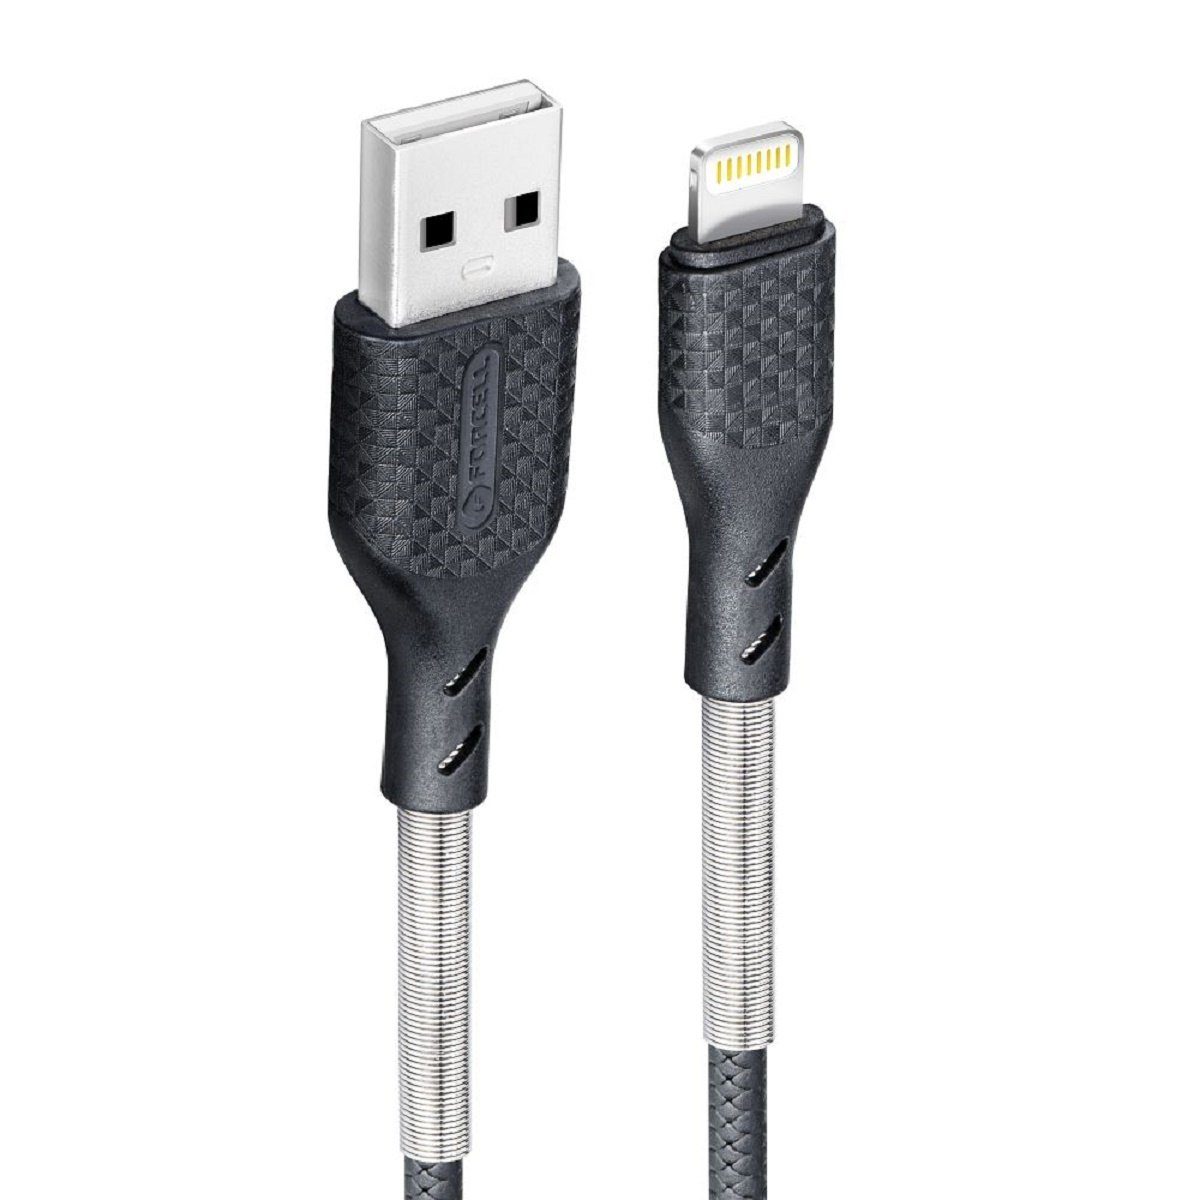 Forcell Ladekabel USB A zu iPhone-Anschluss 8-polig 2,4A CB-01A 1 Meter  Smartphone-Kabel